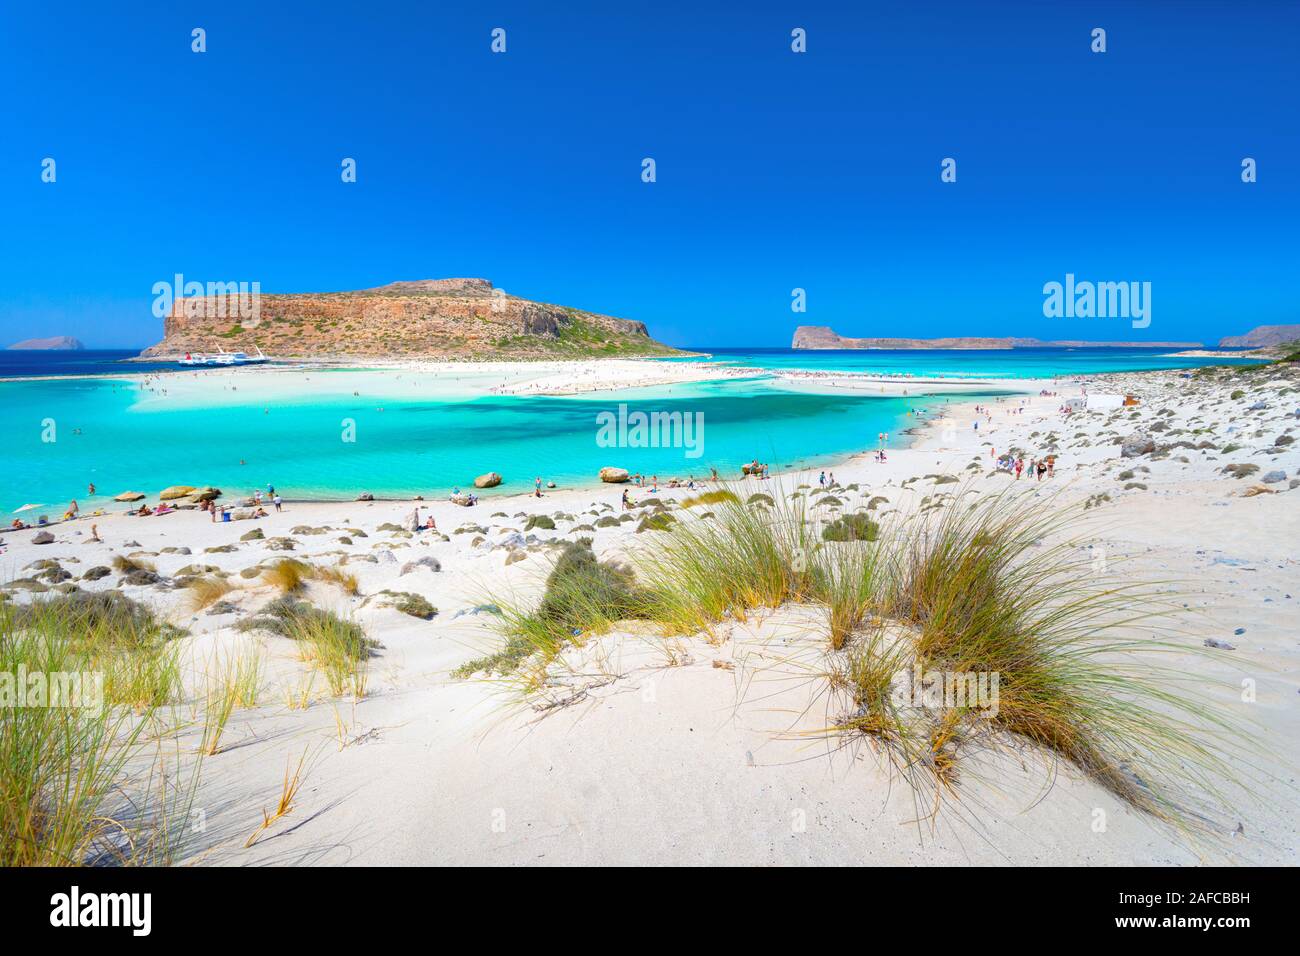 Tolle Aussicht auf die Lagune von Balos withmagical türkisfarbene Wasser, Lagunen, tropische Strände mit weißem Sand und Insel Gramvousa auf Kreta, Griechenland Stockfoto